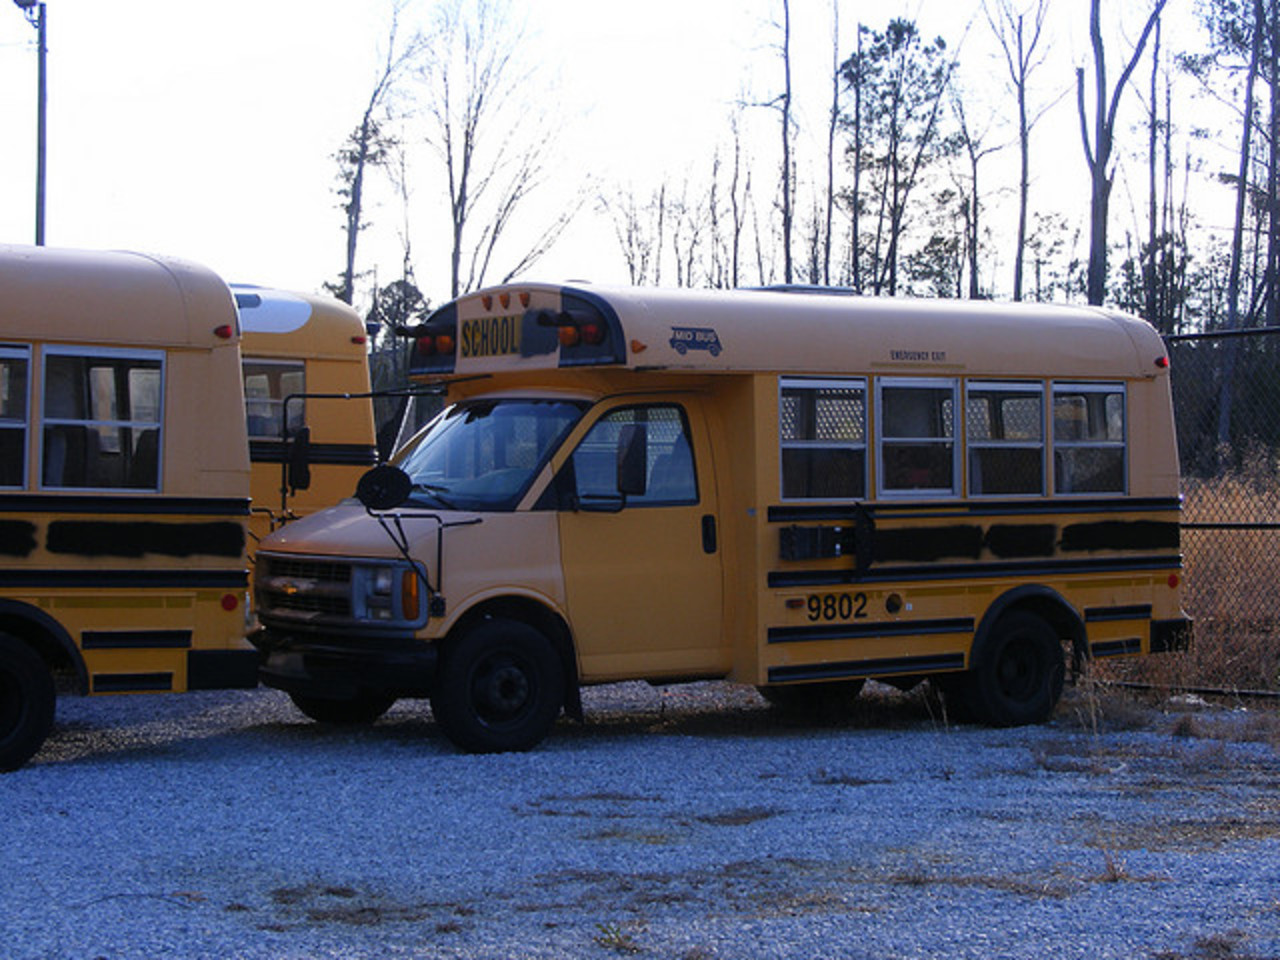 Flickr: La Piscine de Groupe des Autobus Scolaires